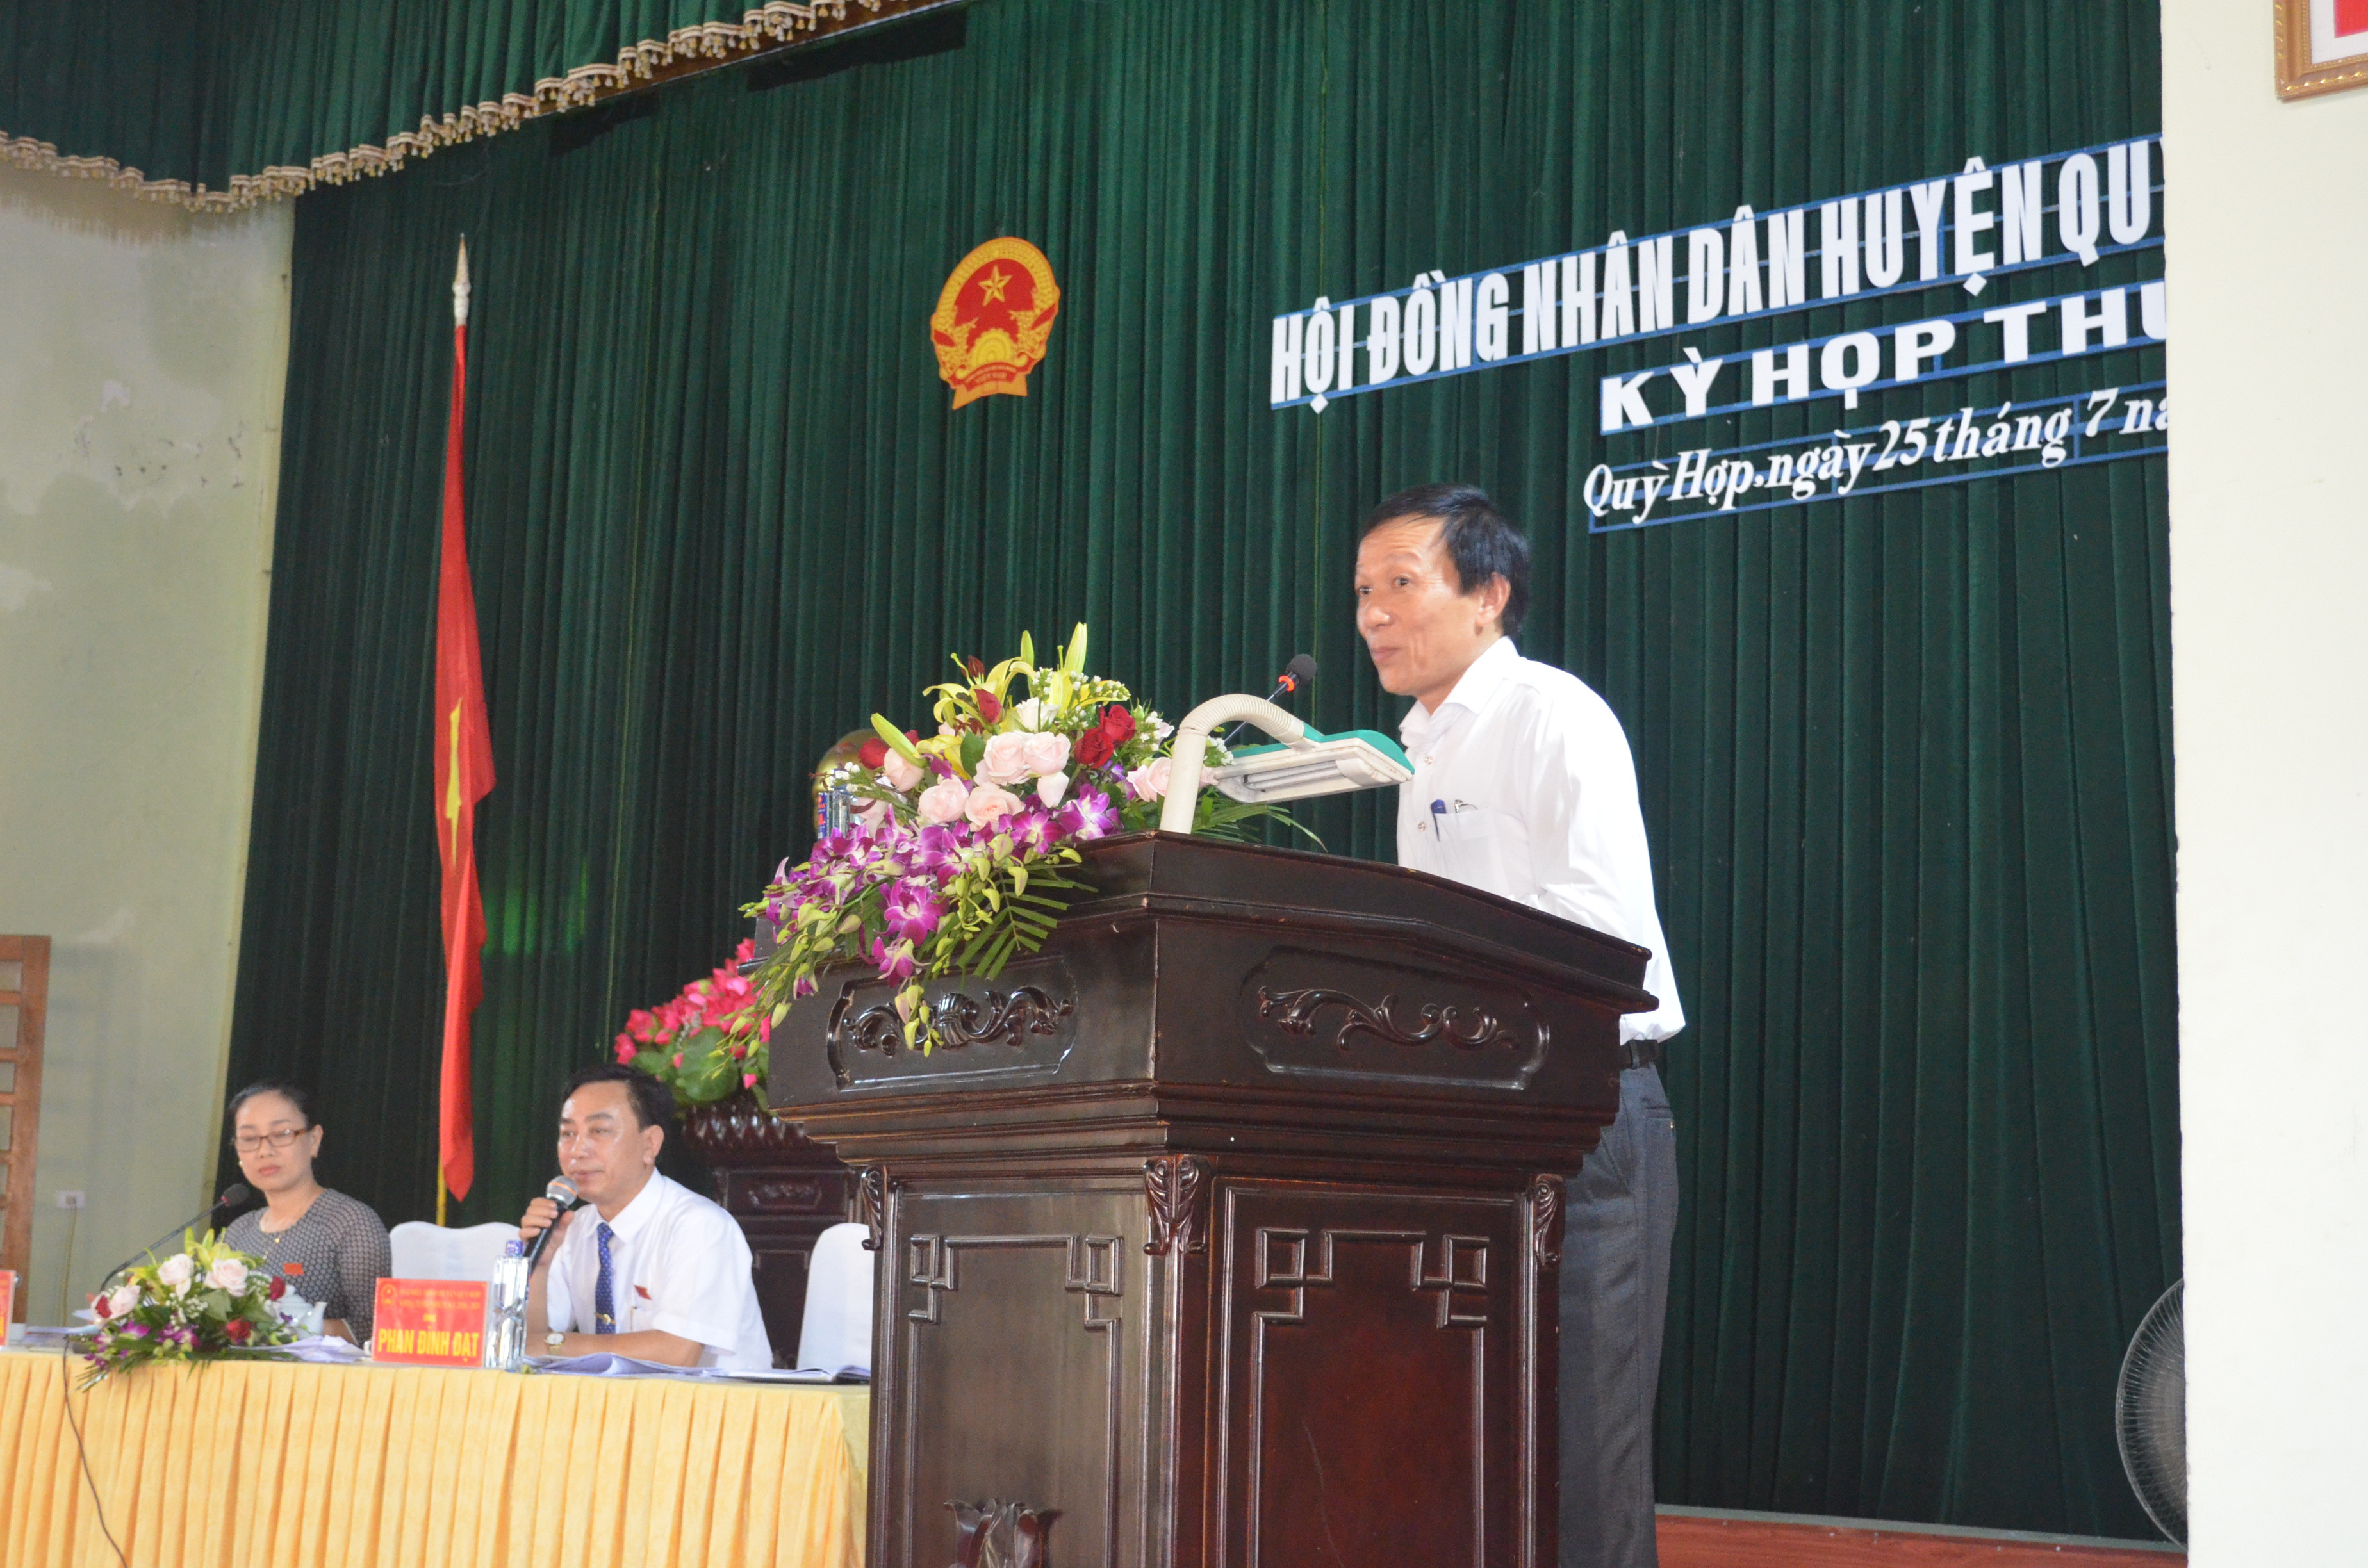 Trưởng phòng TN&MT huyện Quỳ Hợp, ông Lê Sỹ Hào thông tin đến cử tri việc thay thế nguồn nước cho Trạm cấp nước Quỳ Hợp. Ảnh: Nhật Lân